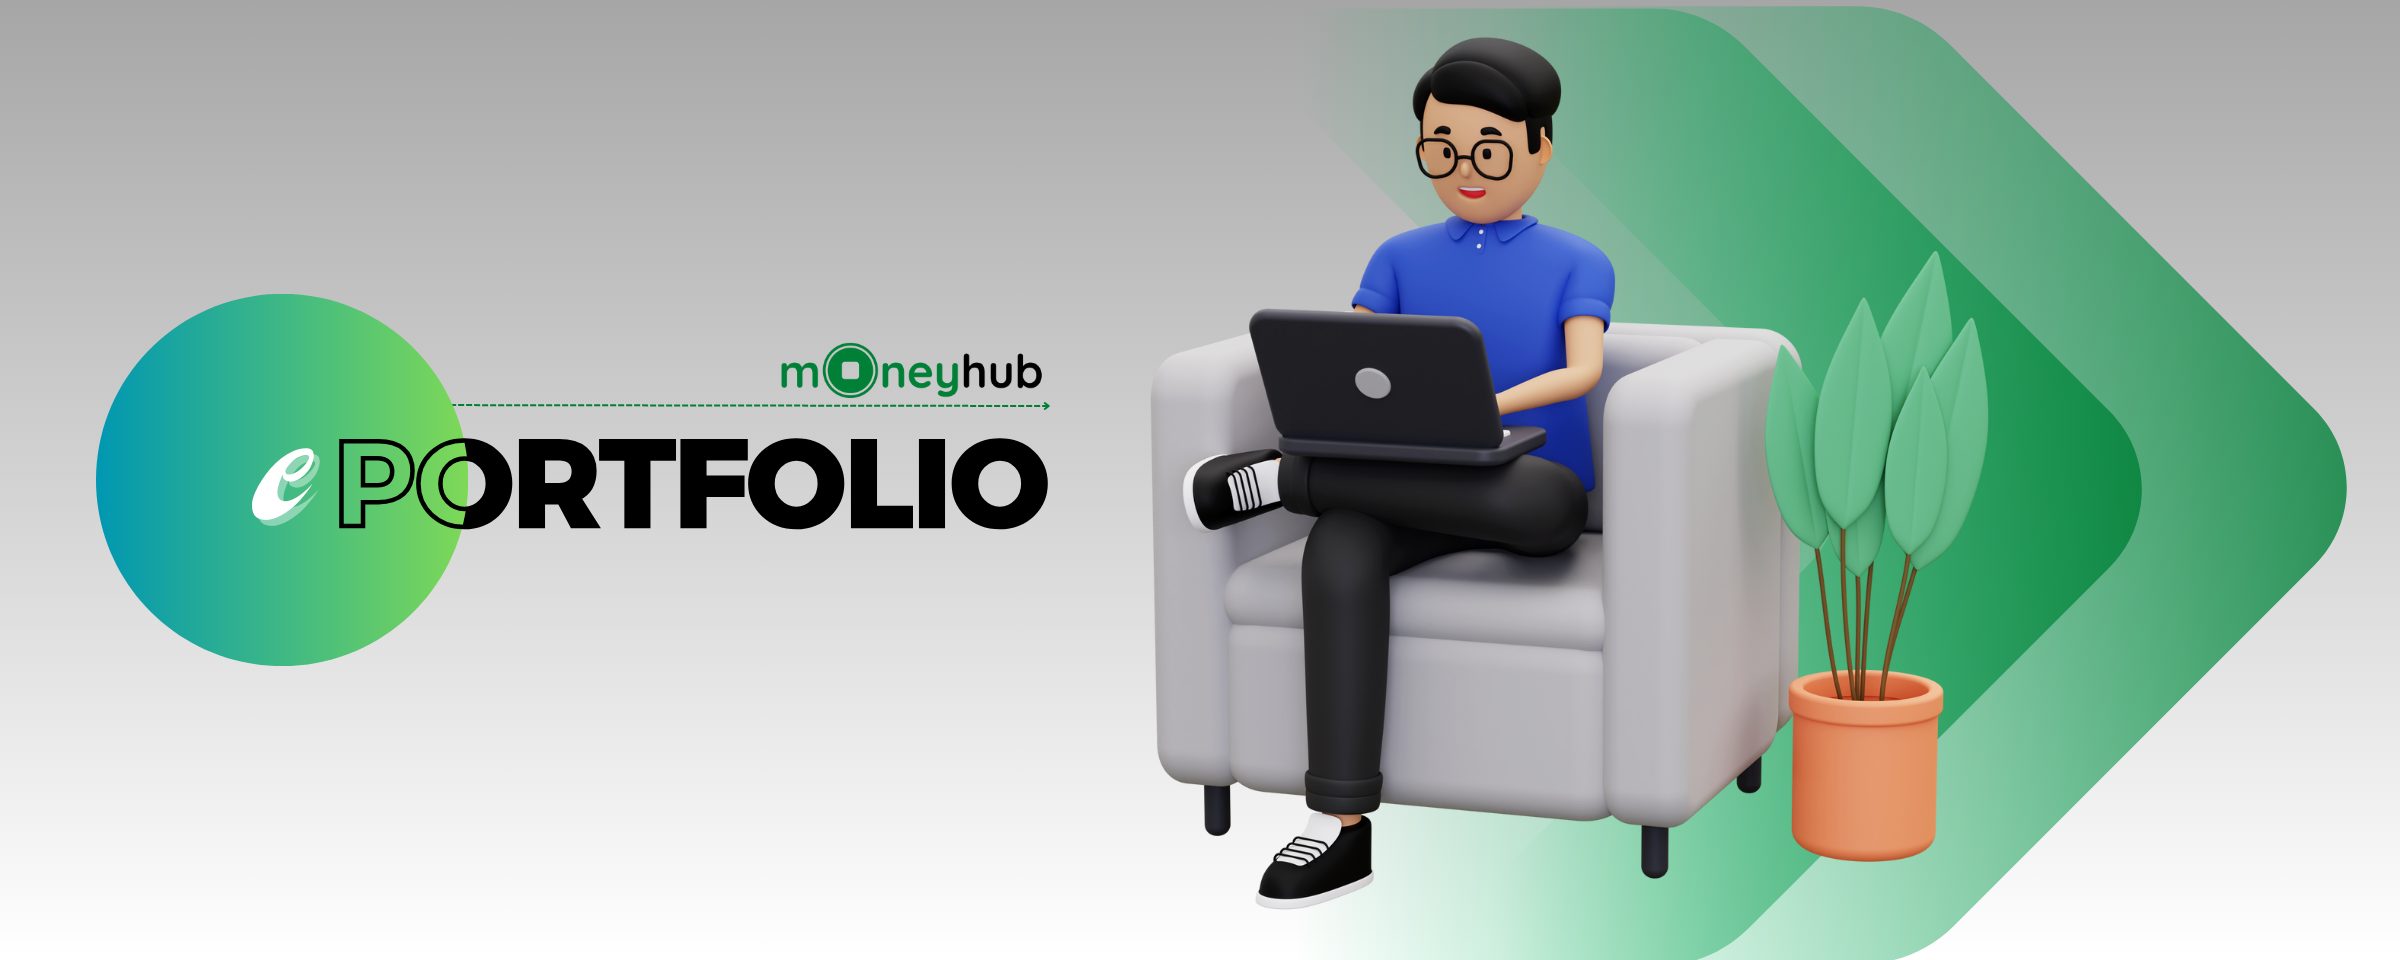 MoneyHub ePortfolio - Danh mục đầu tư mẫu cho người bận rộn